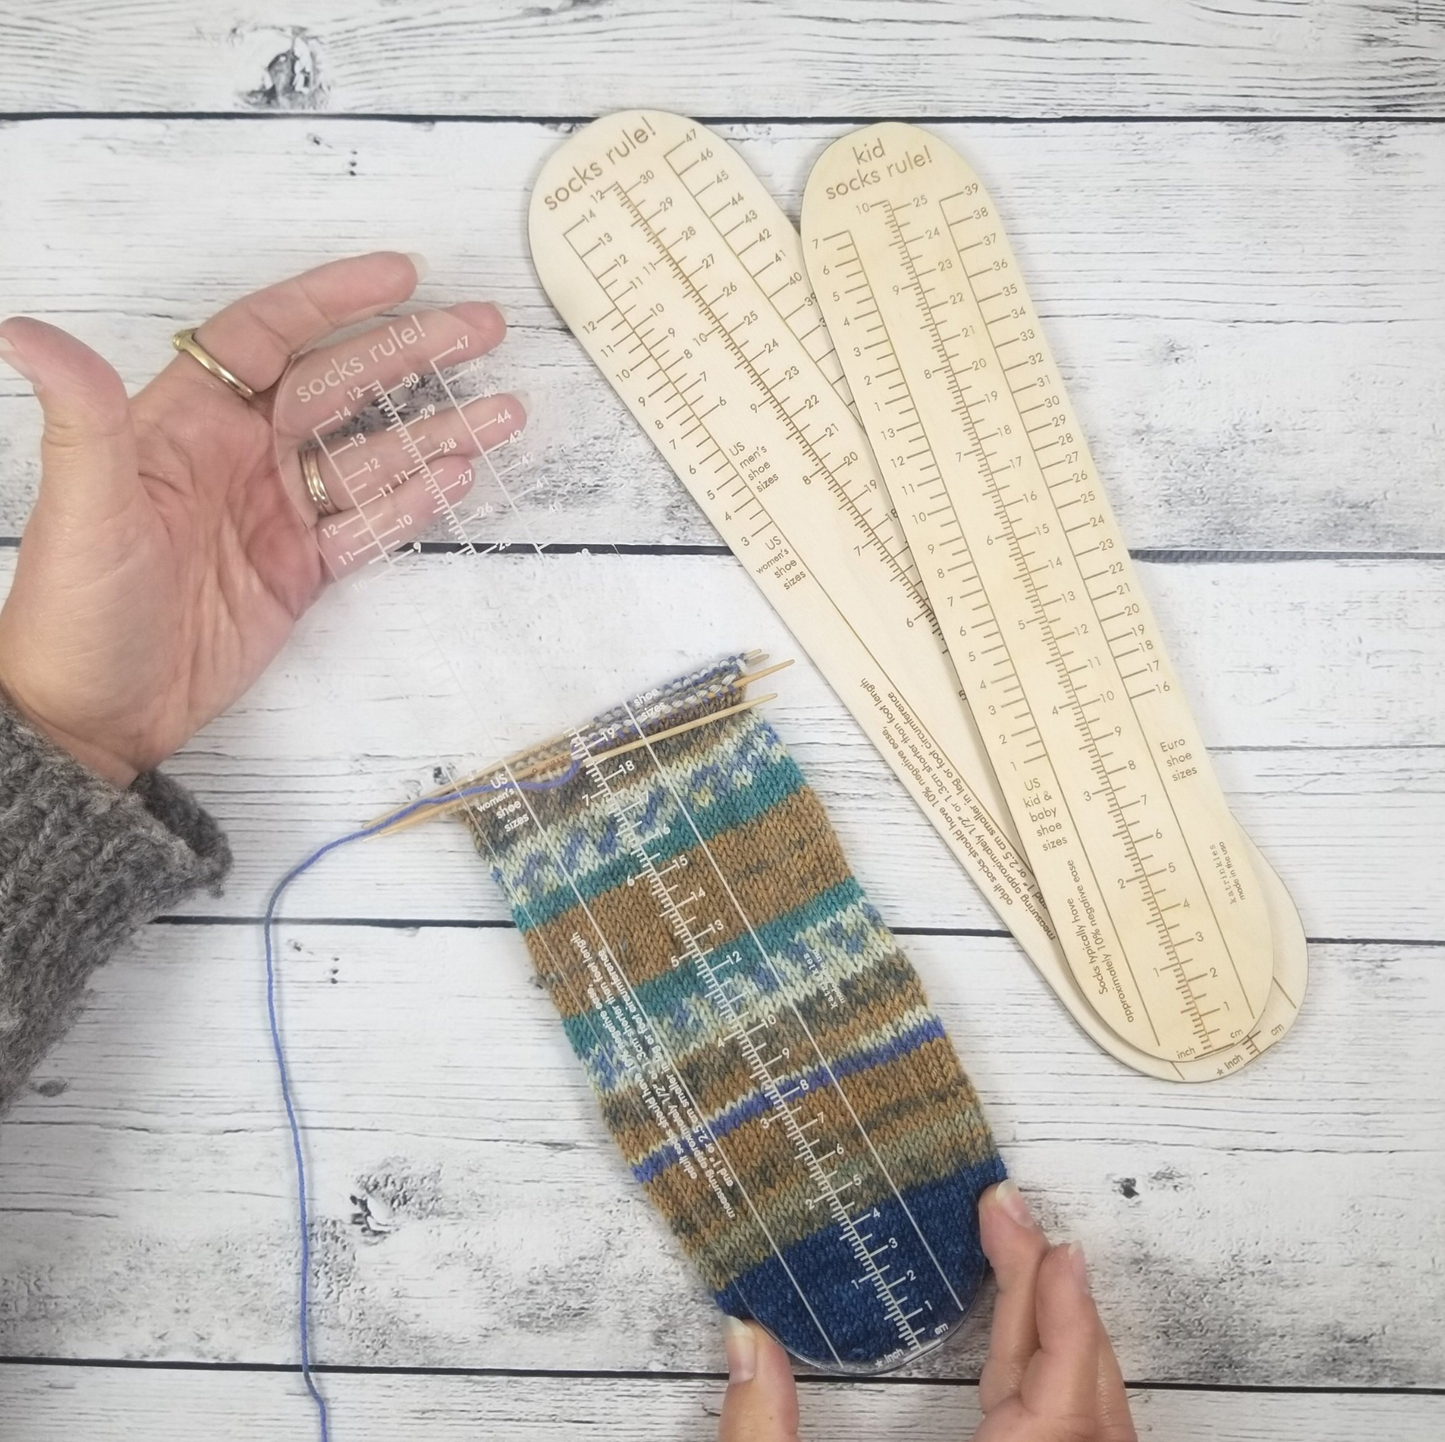 Socks Rule! - Ruler for Measuring Socks - Adult & Kid Sizes Available